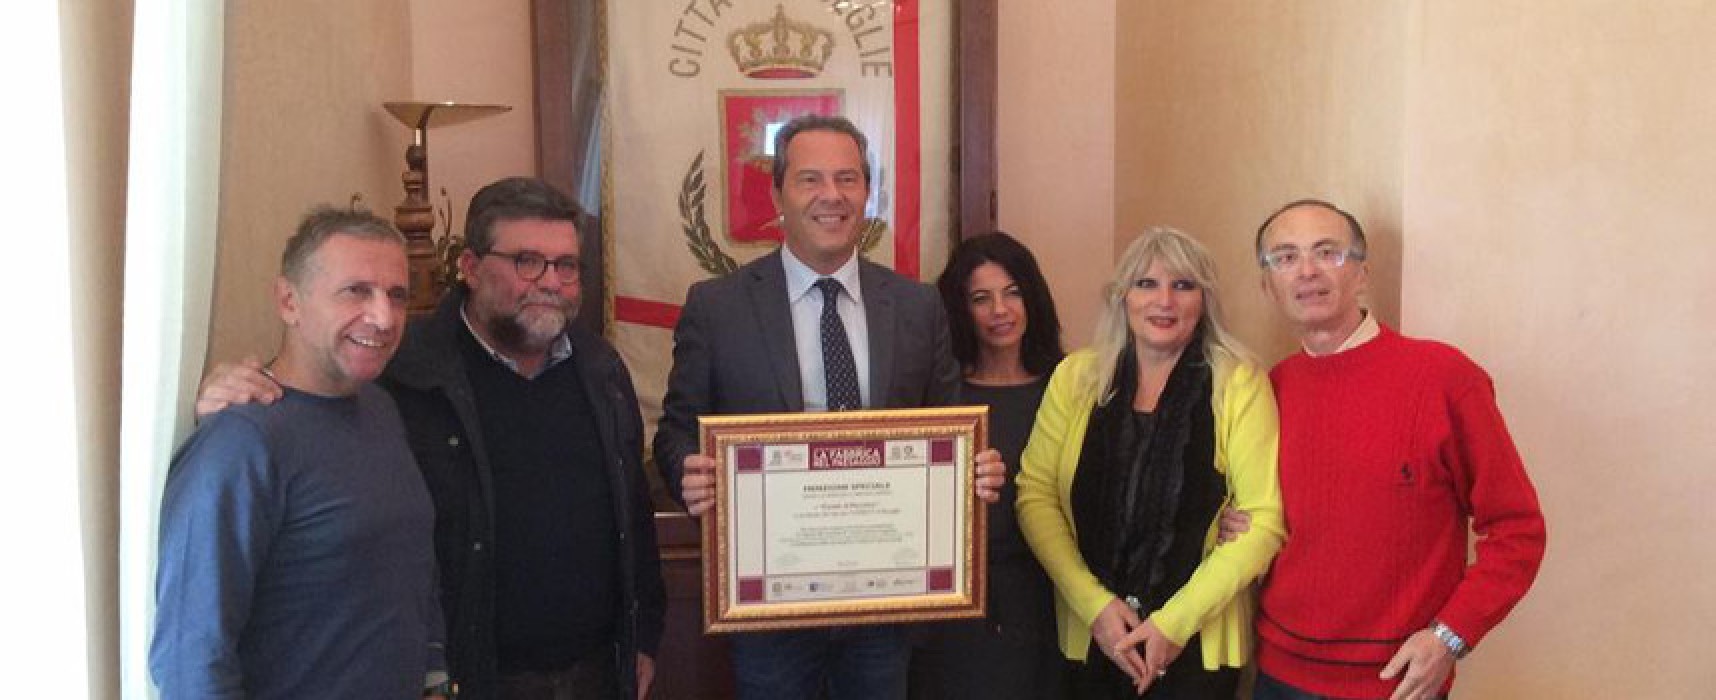 Comune di Bisceglie riceve riconoscimento internazionale per il restauro del Casale di Pacciano